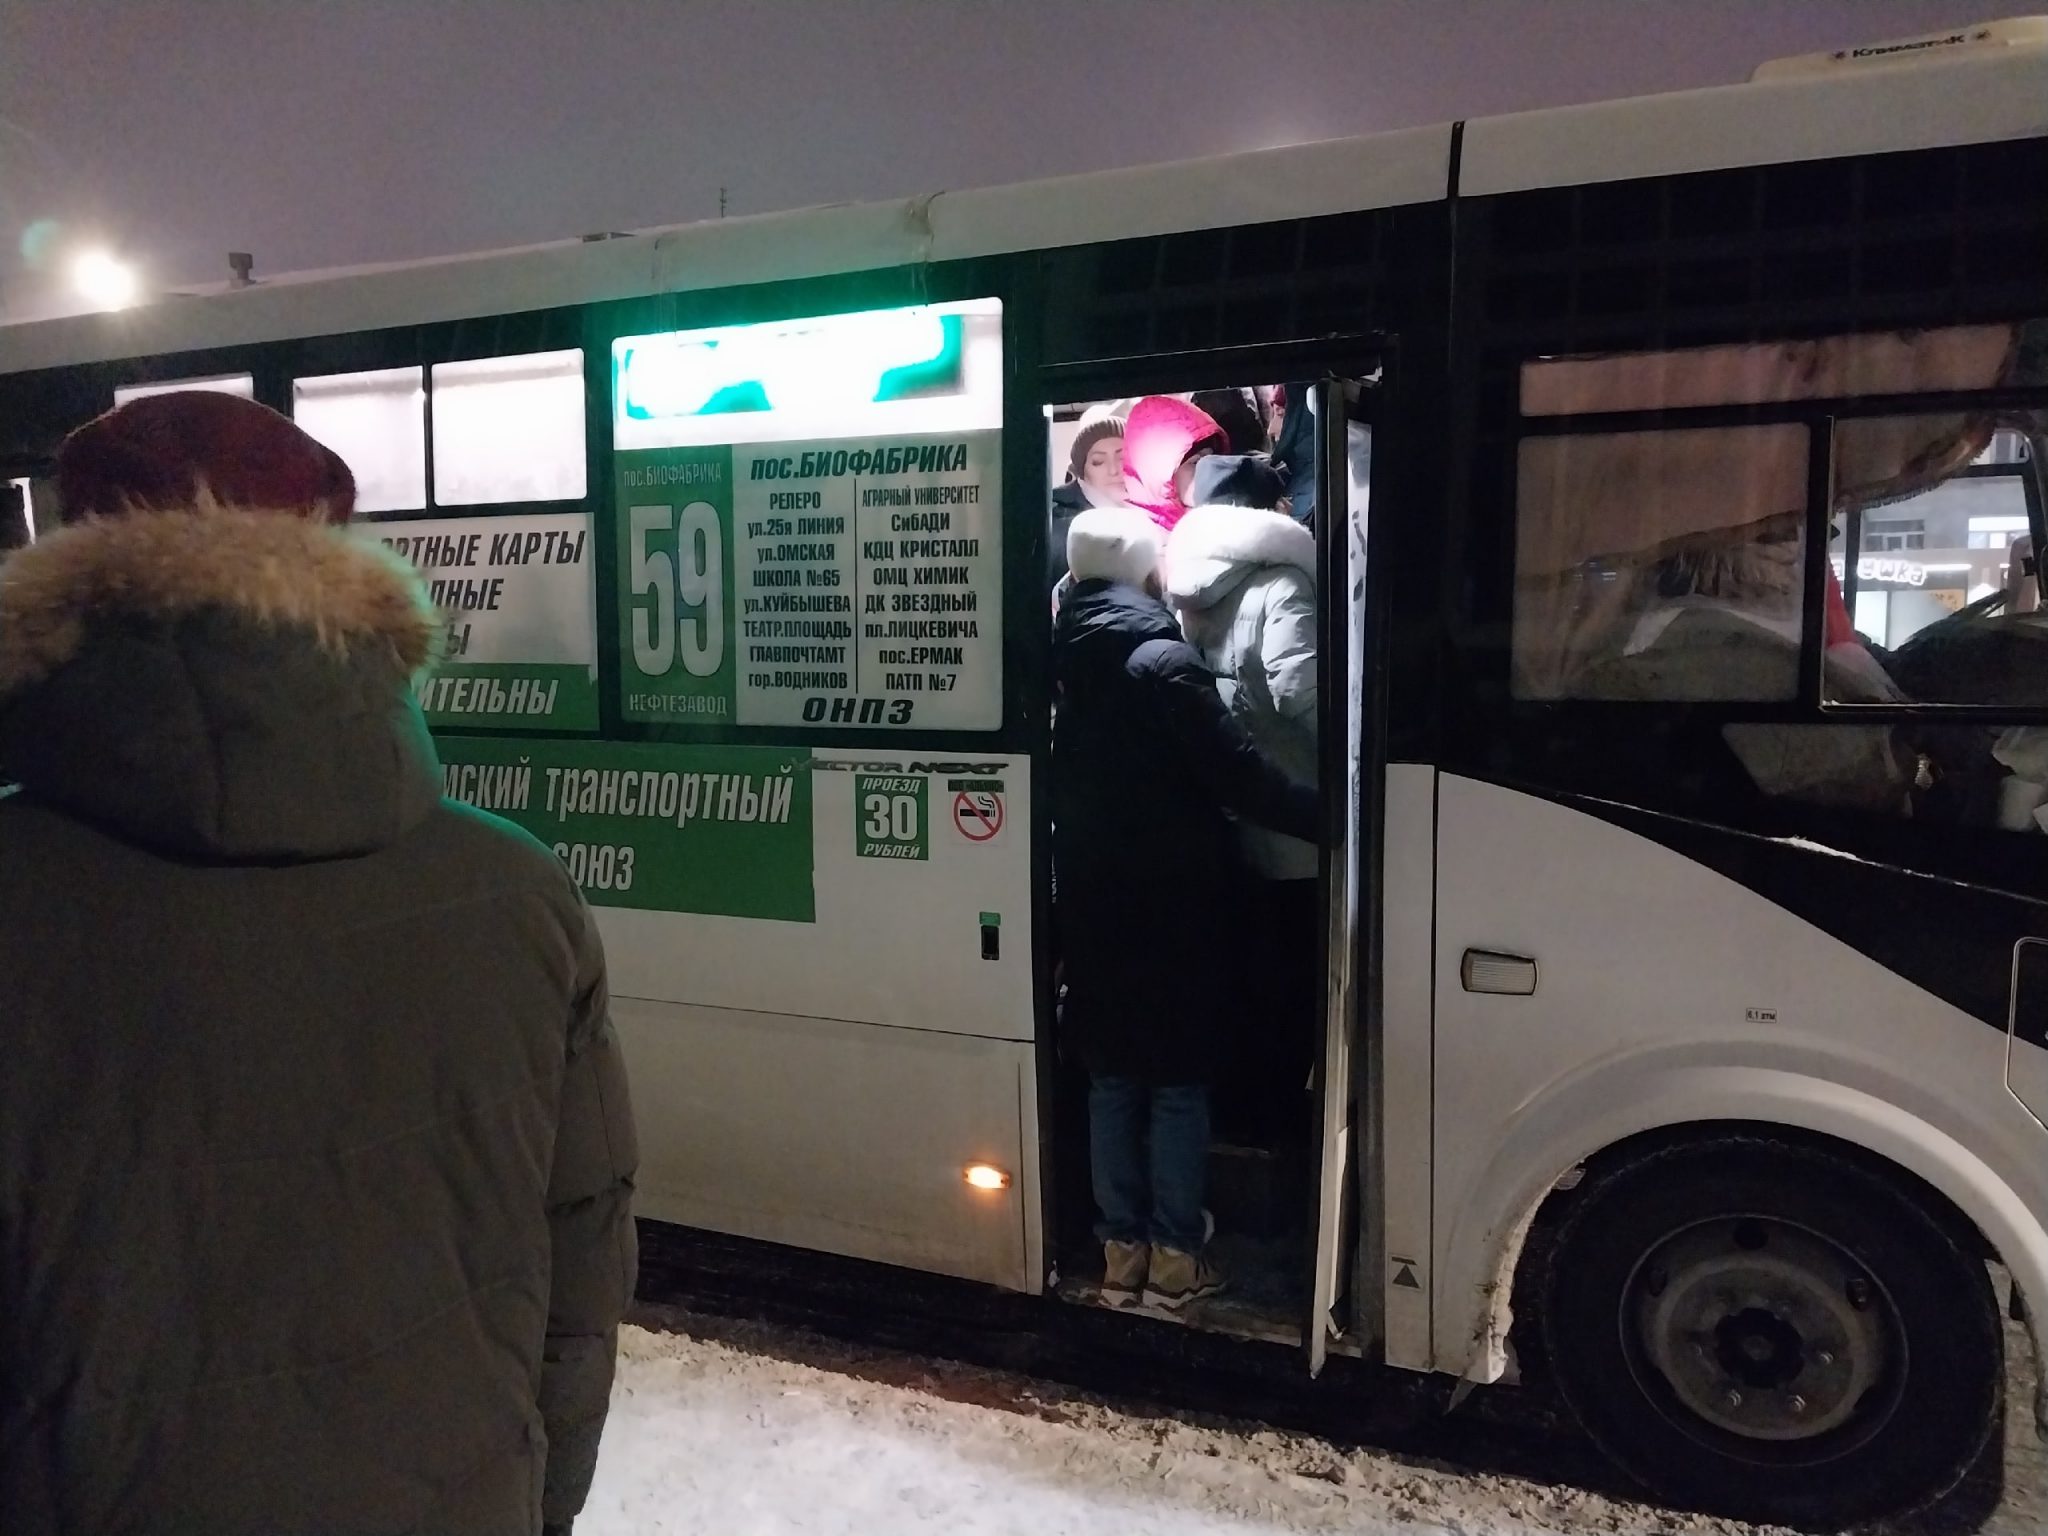 Как в Омске ходят автобусы - мы проследили за ними в час пик